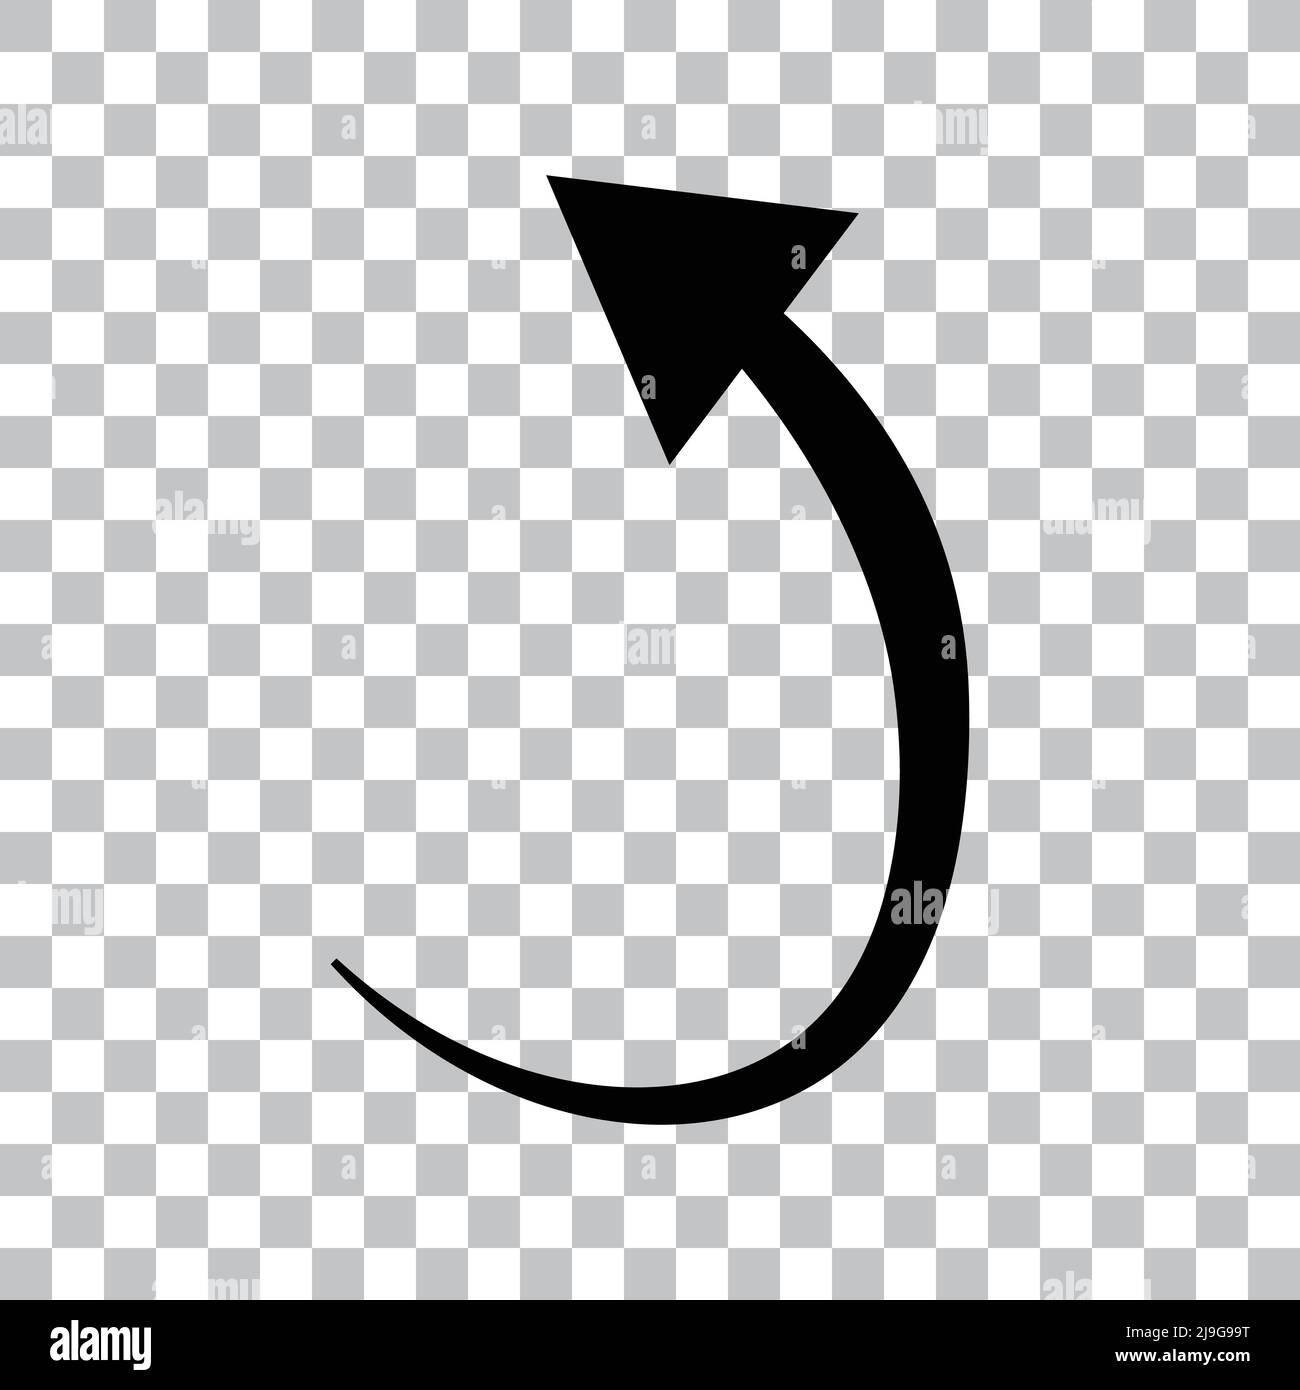 An ascending arrow icon. Editable vector. Stock Vector